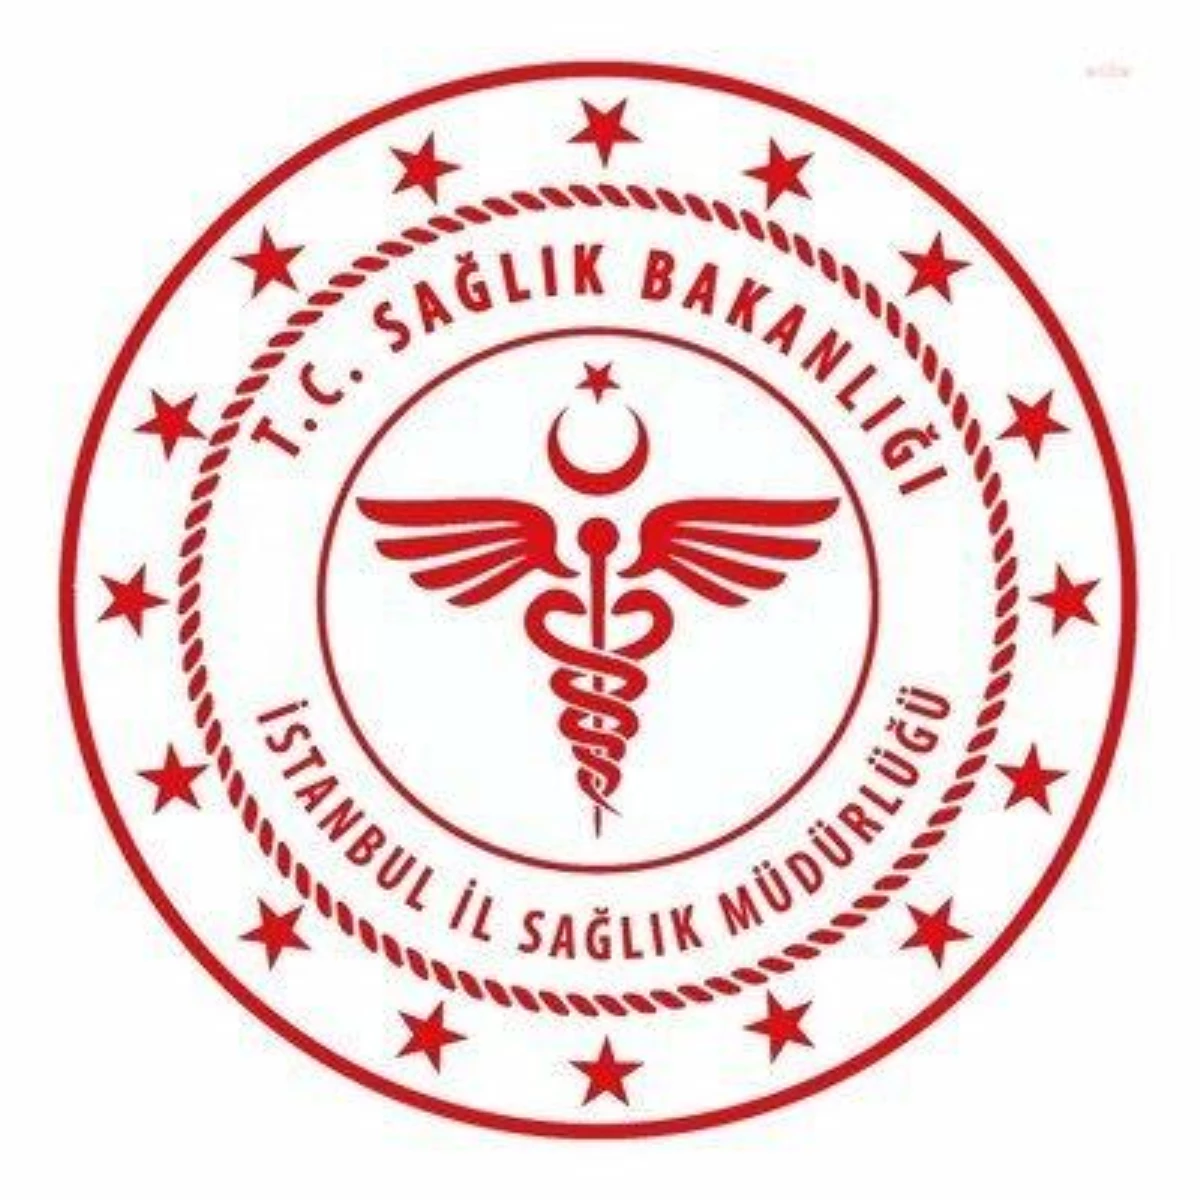 İstanbul İl Sağlık Müdürlüğü; Aynı Gün Yarım Saat Arayla Açtığı Üç Ayrı İhaleyi Tek Şirket Kazandı